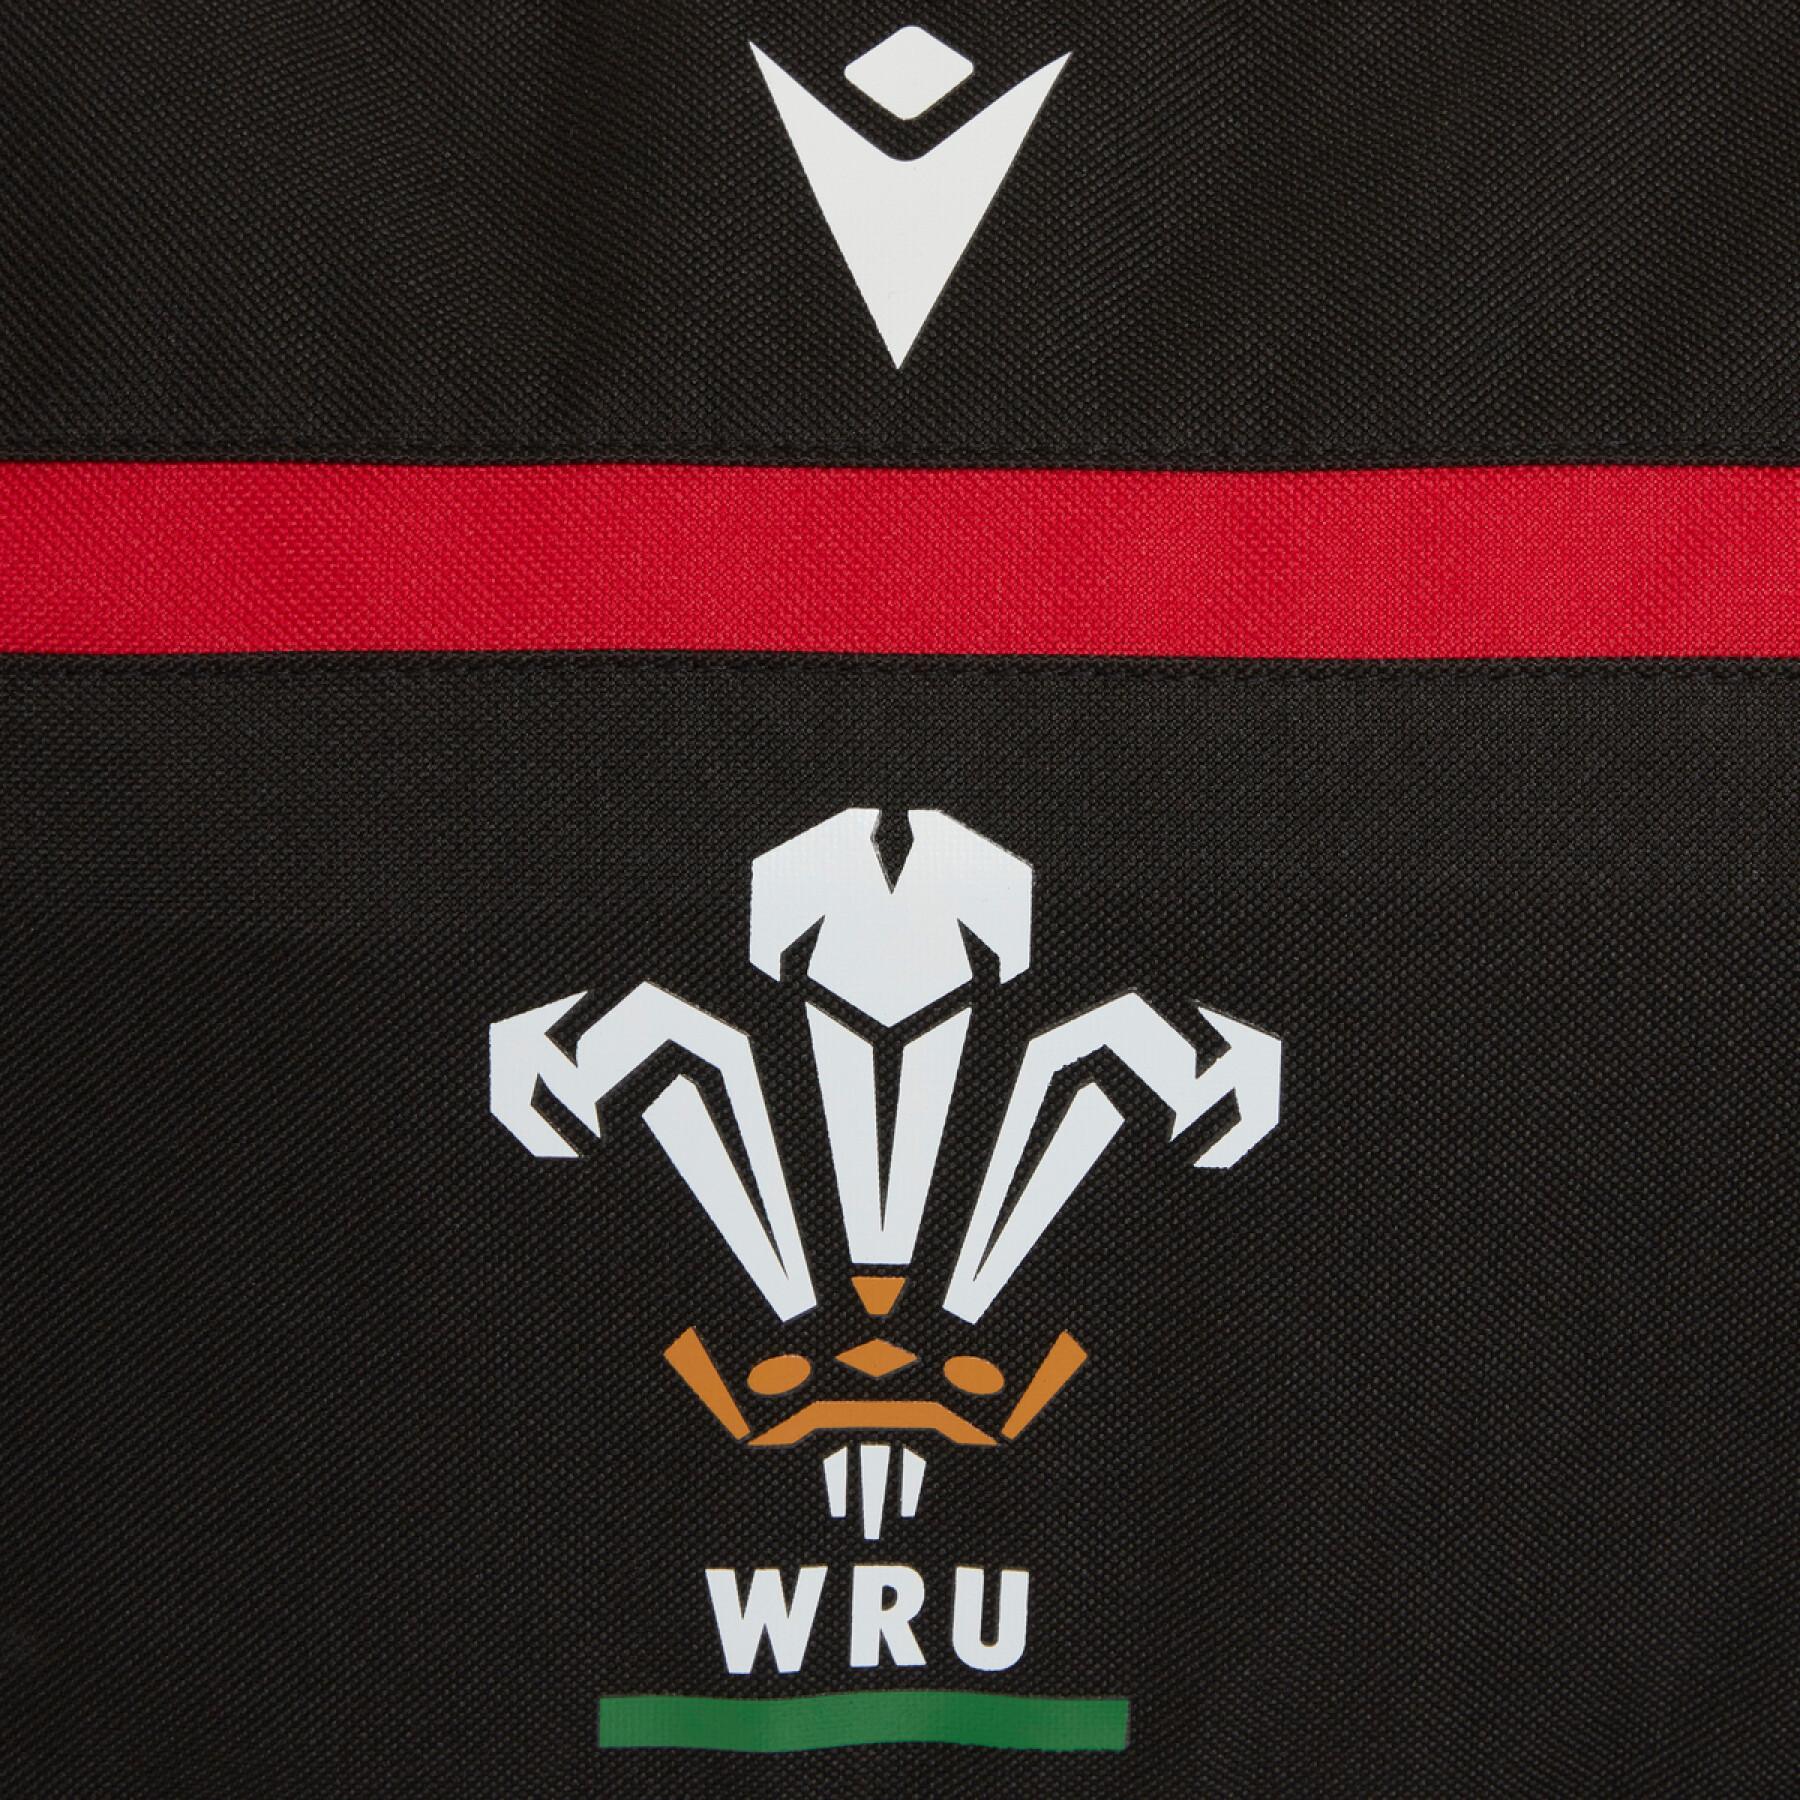 Sac de sport Pays de Galles rugby 2020/21